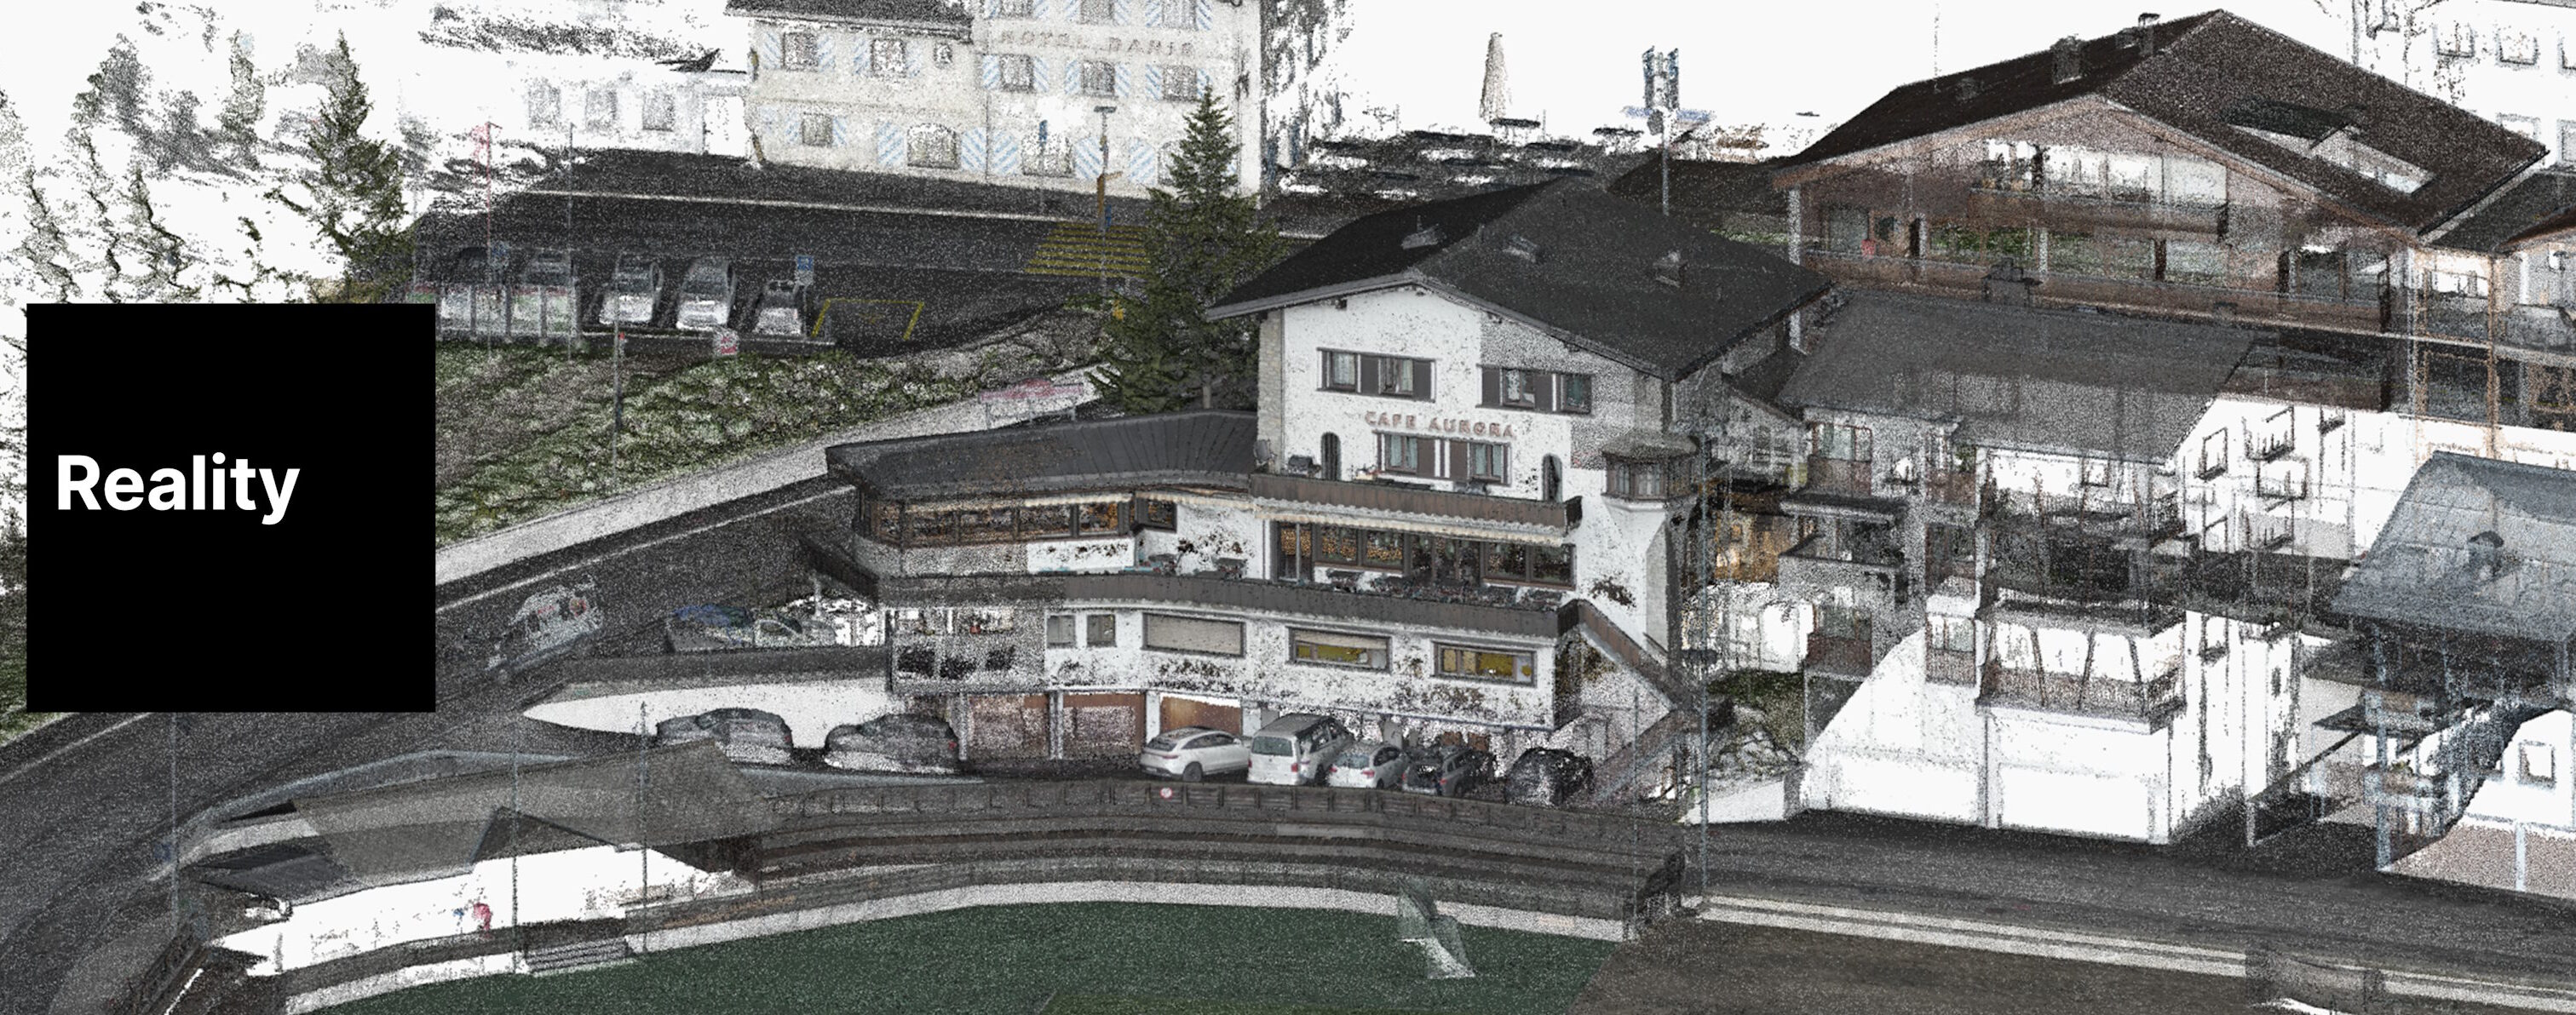 Punktwolke eines Hotel Gebäudes mit Umgebung und dem Text Reflected Reallity